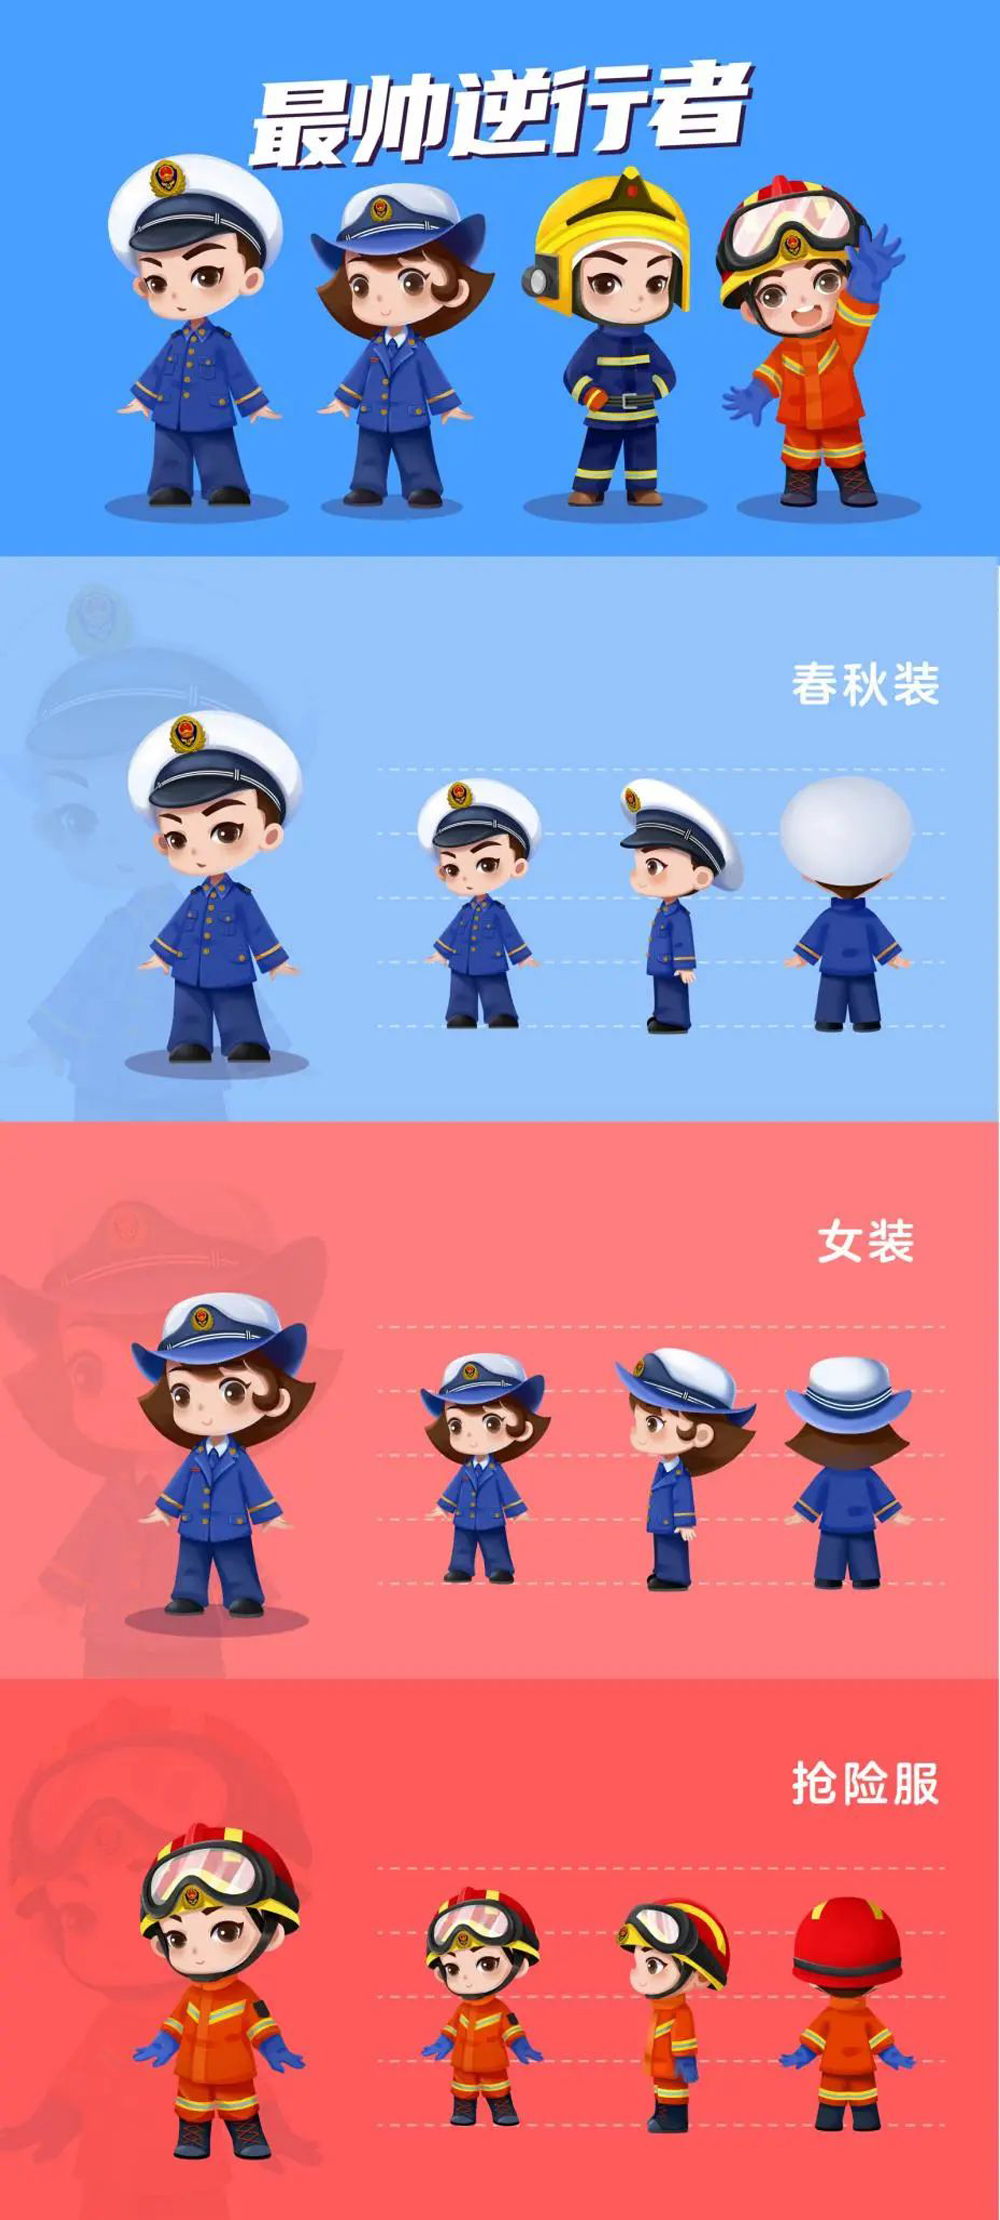 中国消防动漫形象创意设计大赛获奖名单及获奖作品(图10)